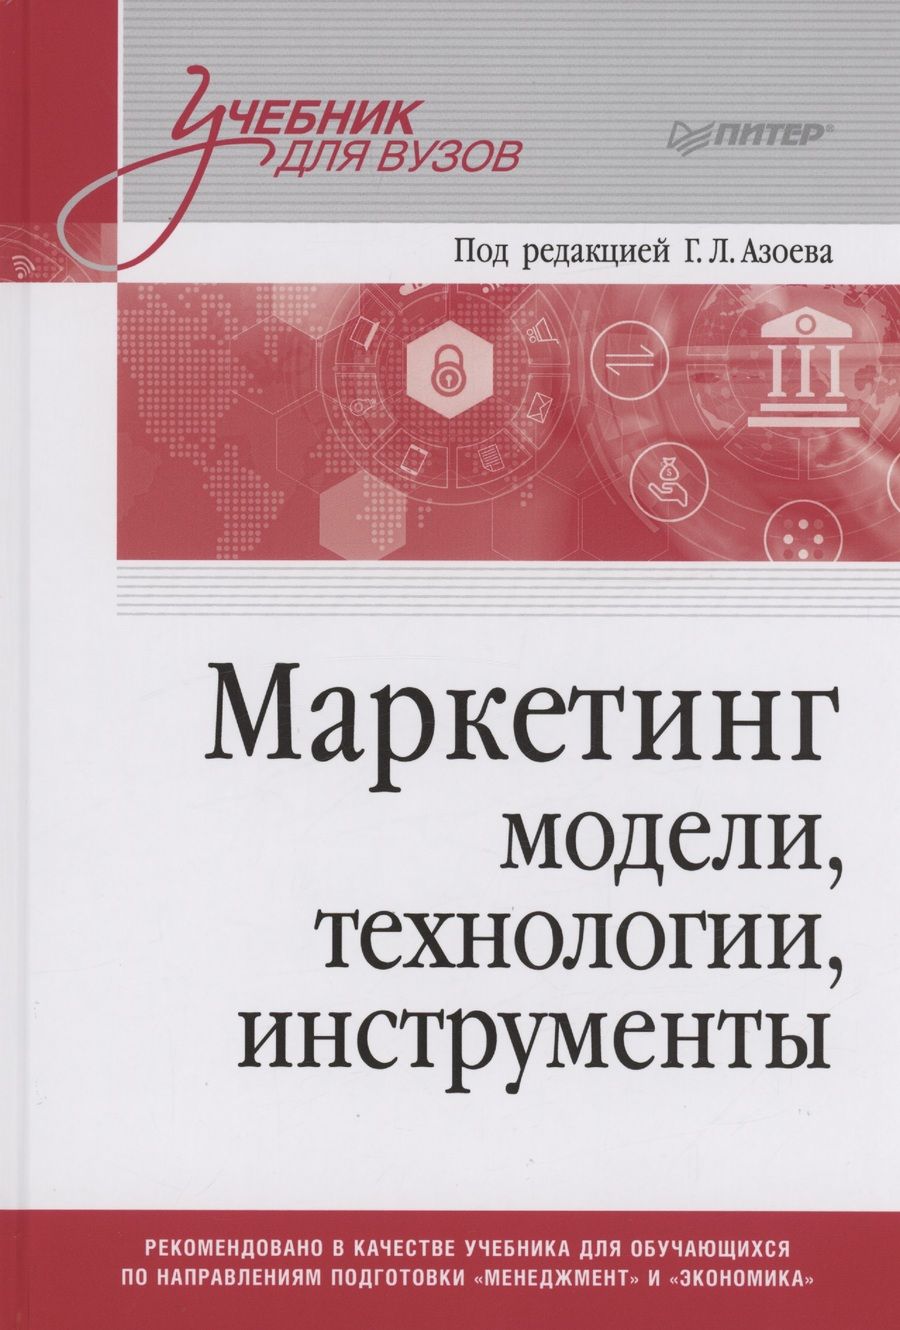 Обложка книги "Азоев, Сумарокова, Старостин: Маркетинг. Модели, технологии, инструменты. Учебник для вузов"